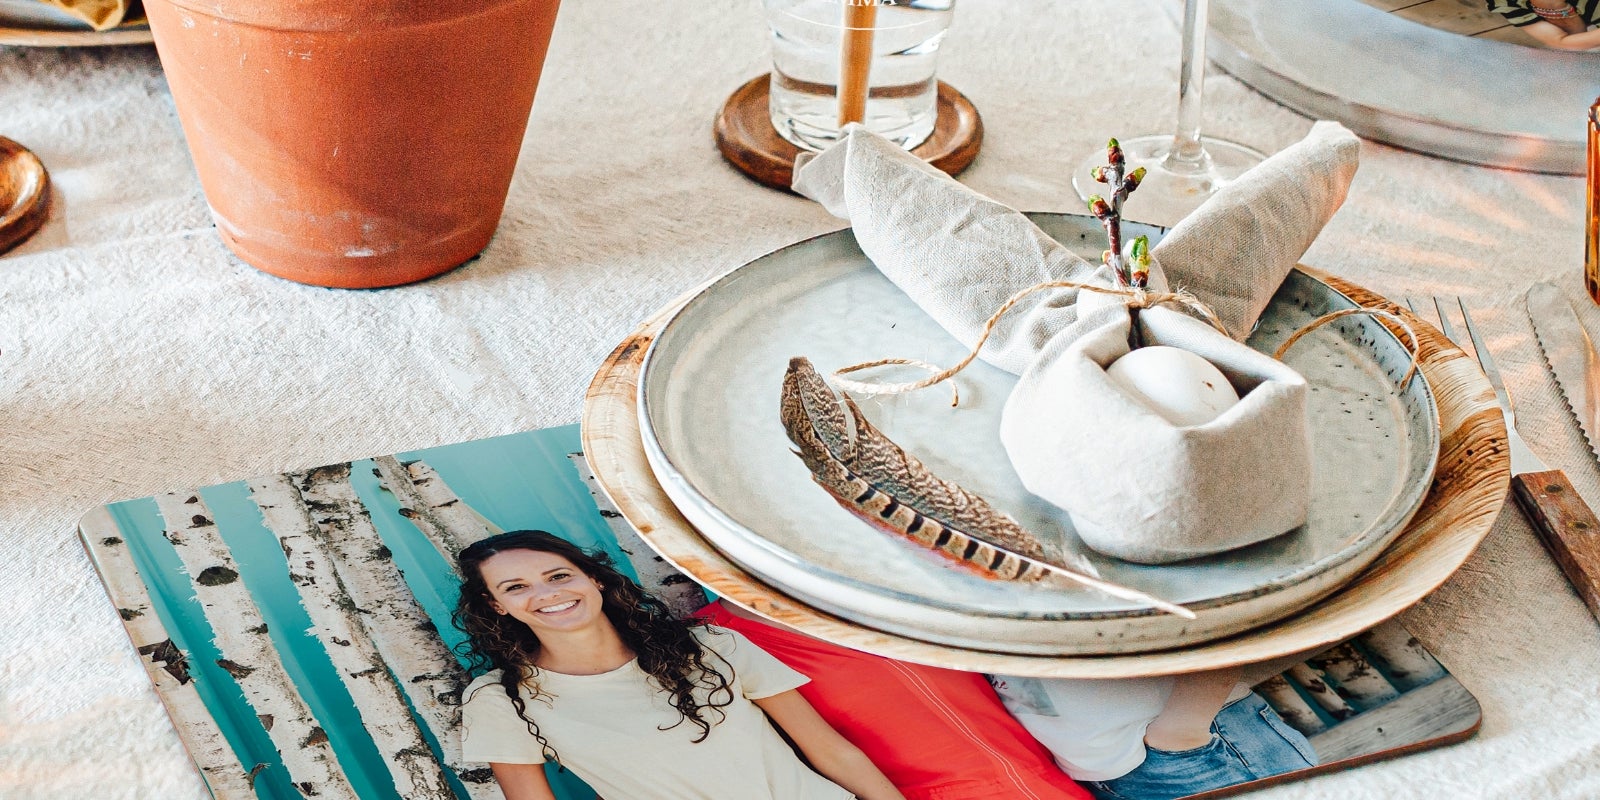 30 servilletas bonitas y originales para decorar la mesa